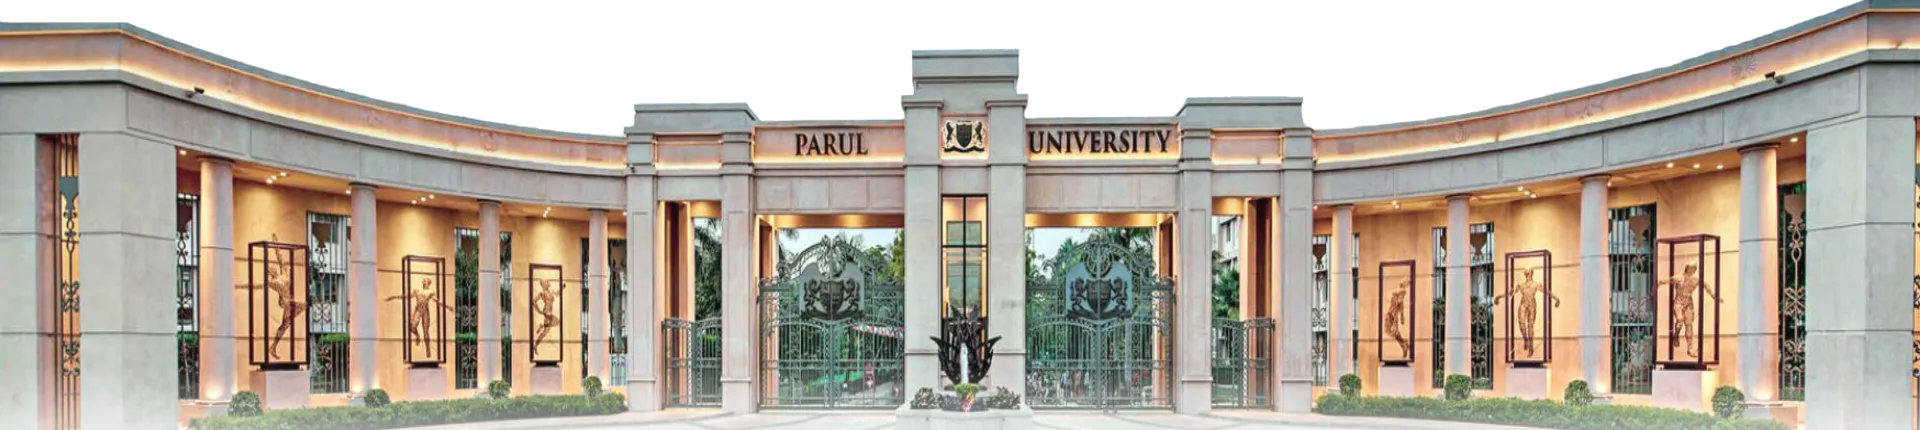 Parul University - Image